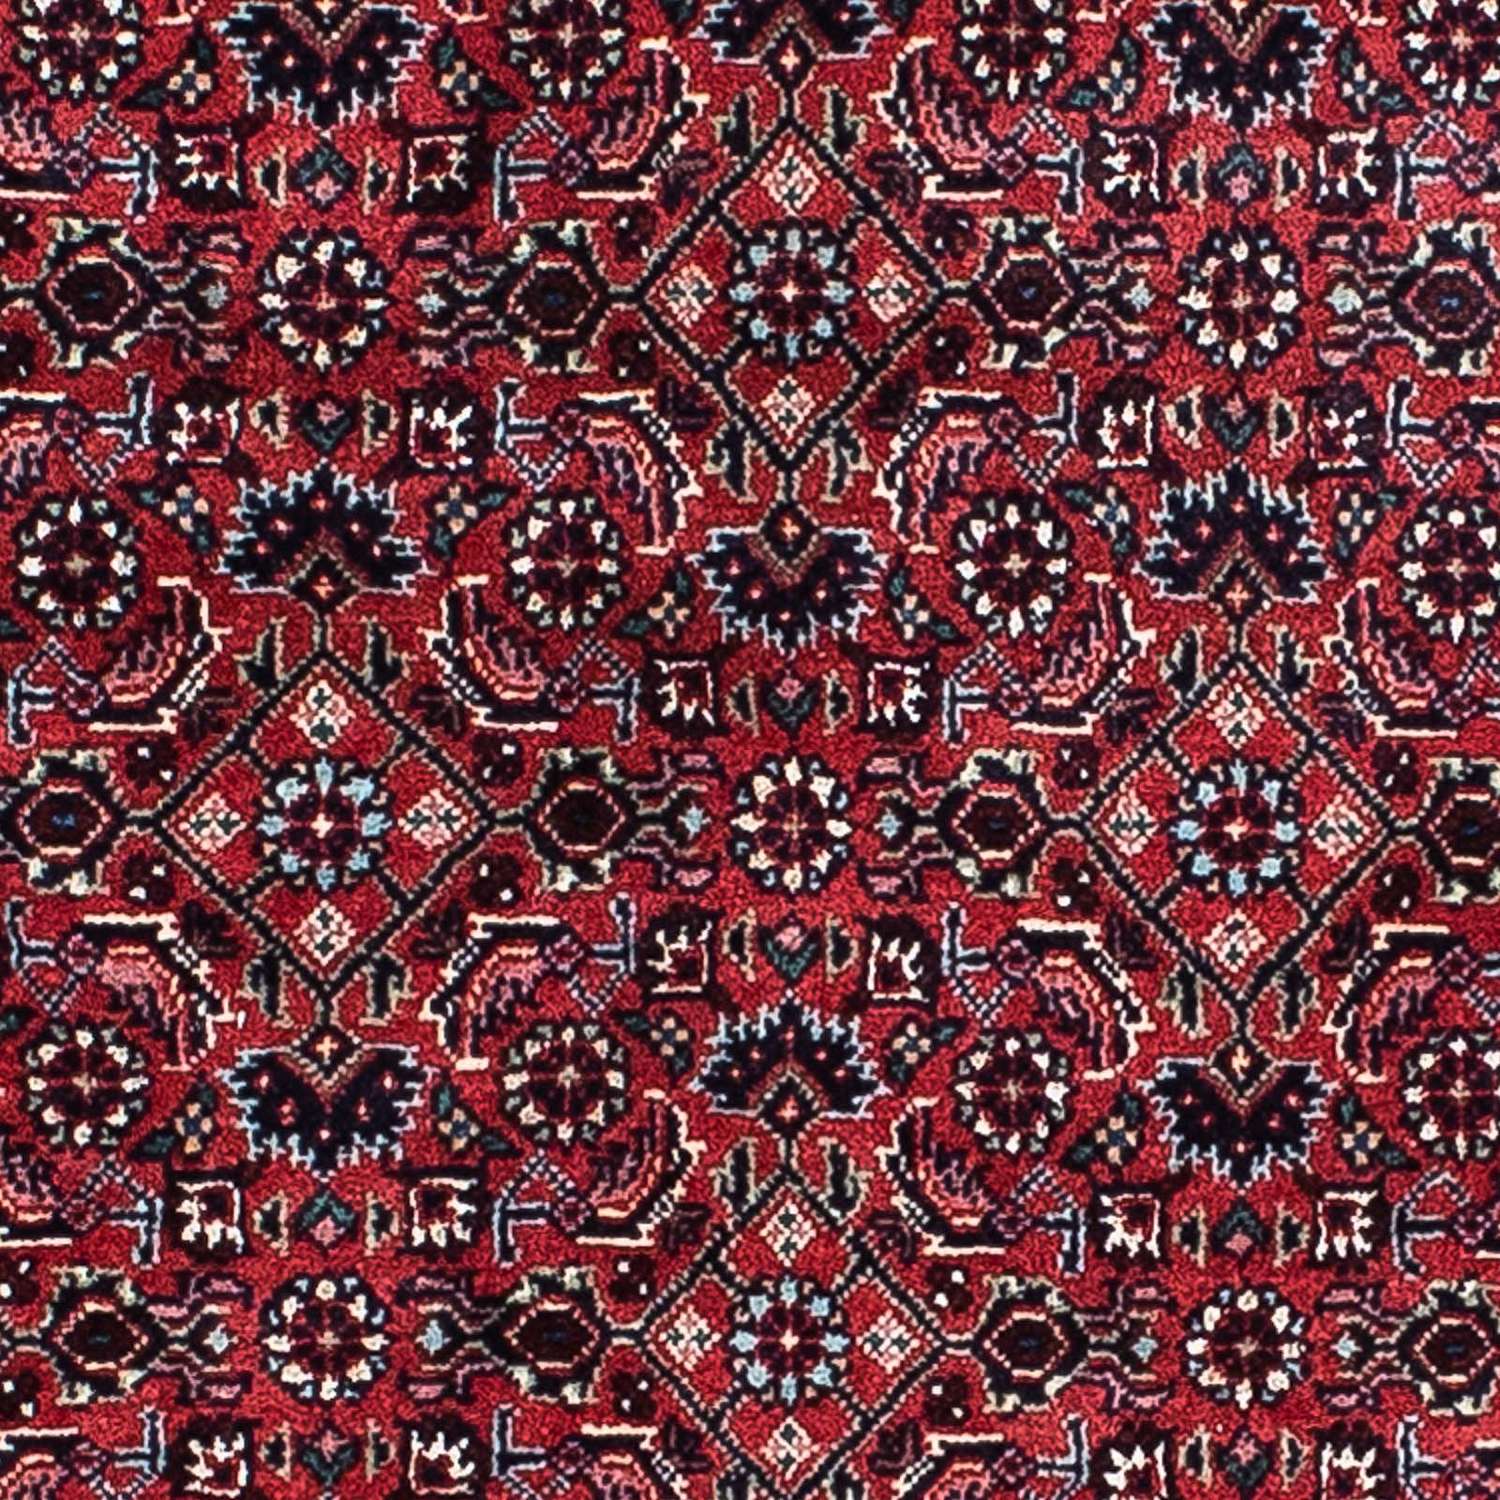 Persisk matta - Bijar - 207 x 132 cm - ljusröd